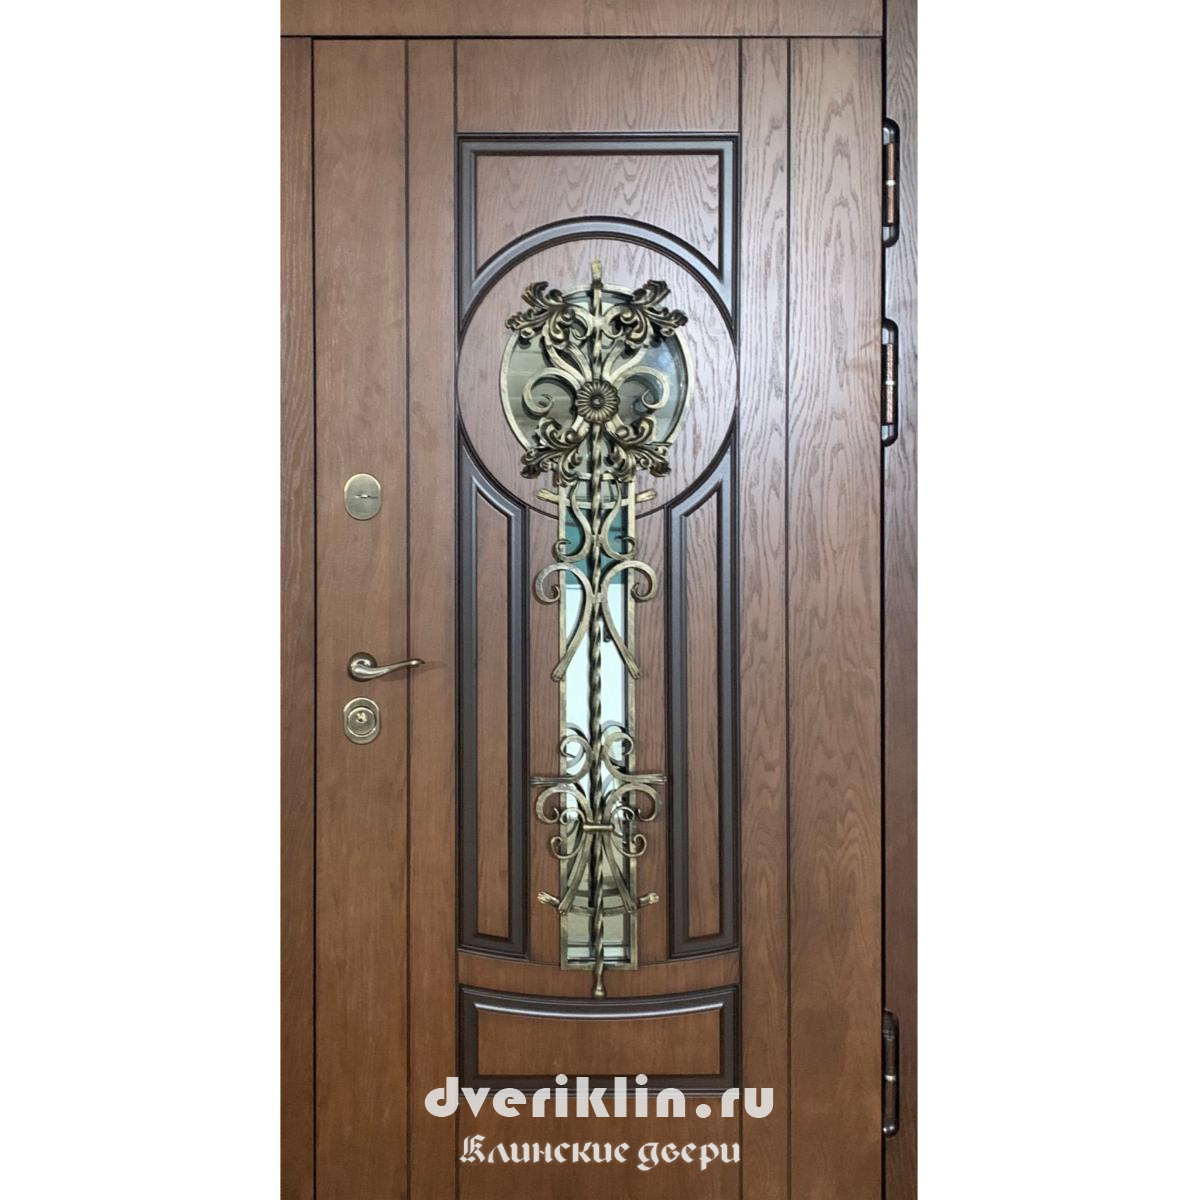 Дверь в коттедж MKD-15 (В коттедж)